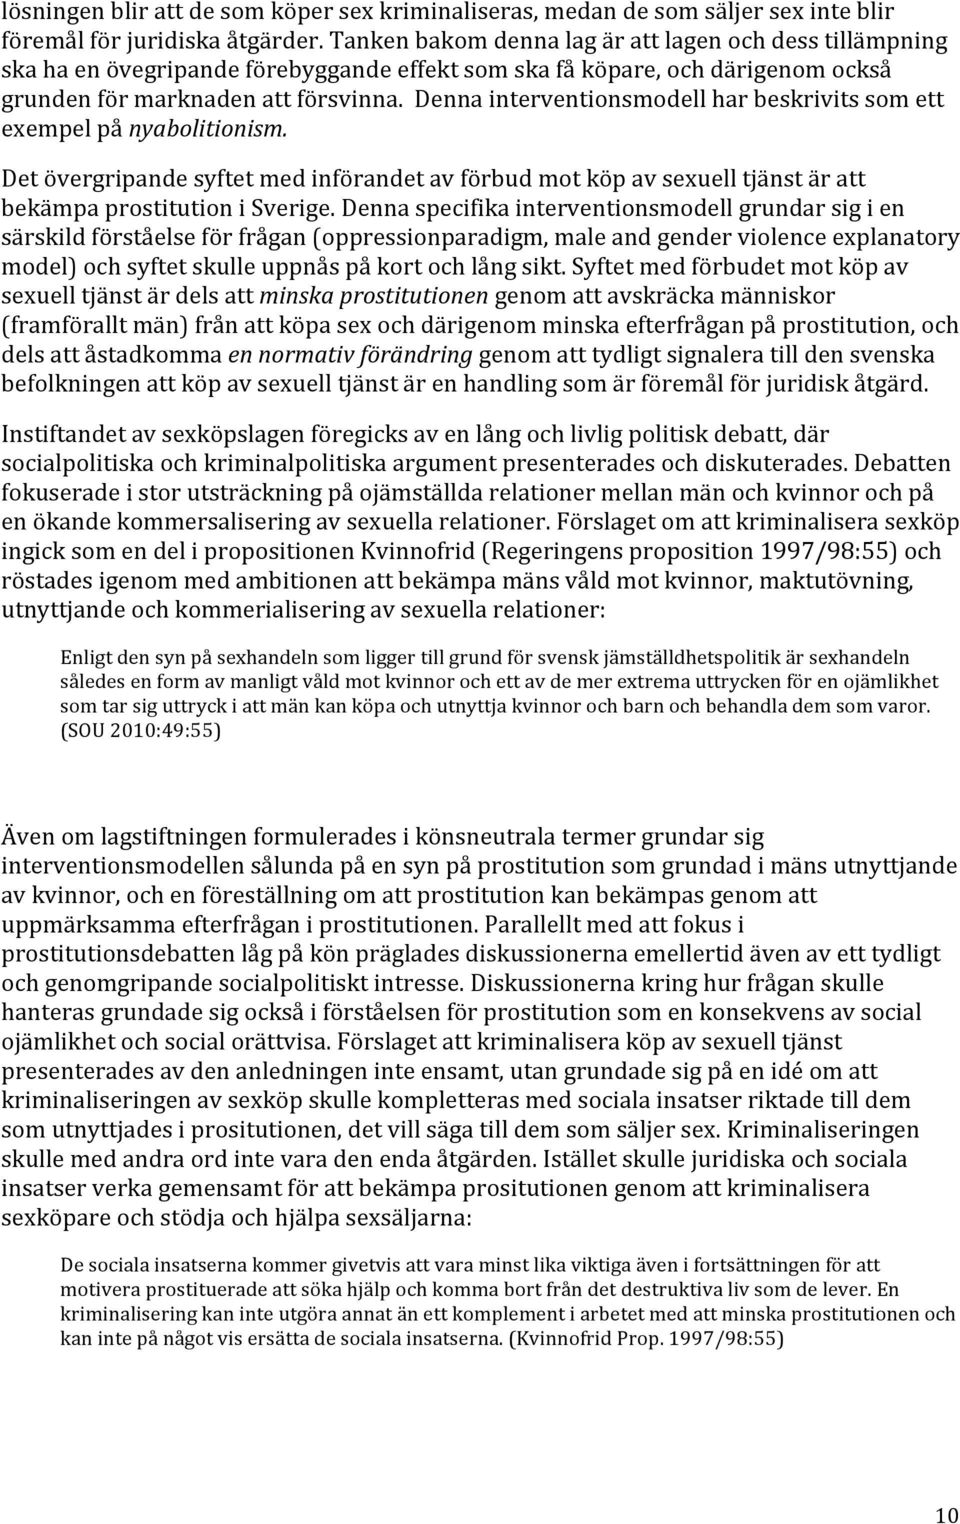 Denna interventionsmodell har beskrivits som ett exempel på nyabolitionism. Det övergripande syftet med införandet av förbud mot köp av sexuell tjänst är att bekämpa prostitution i Sverige.